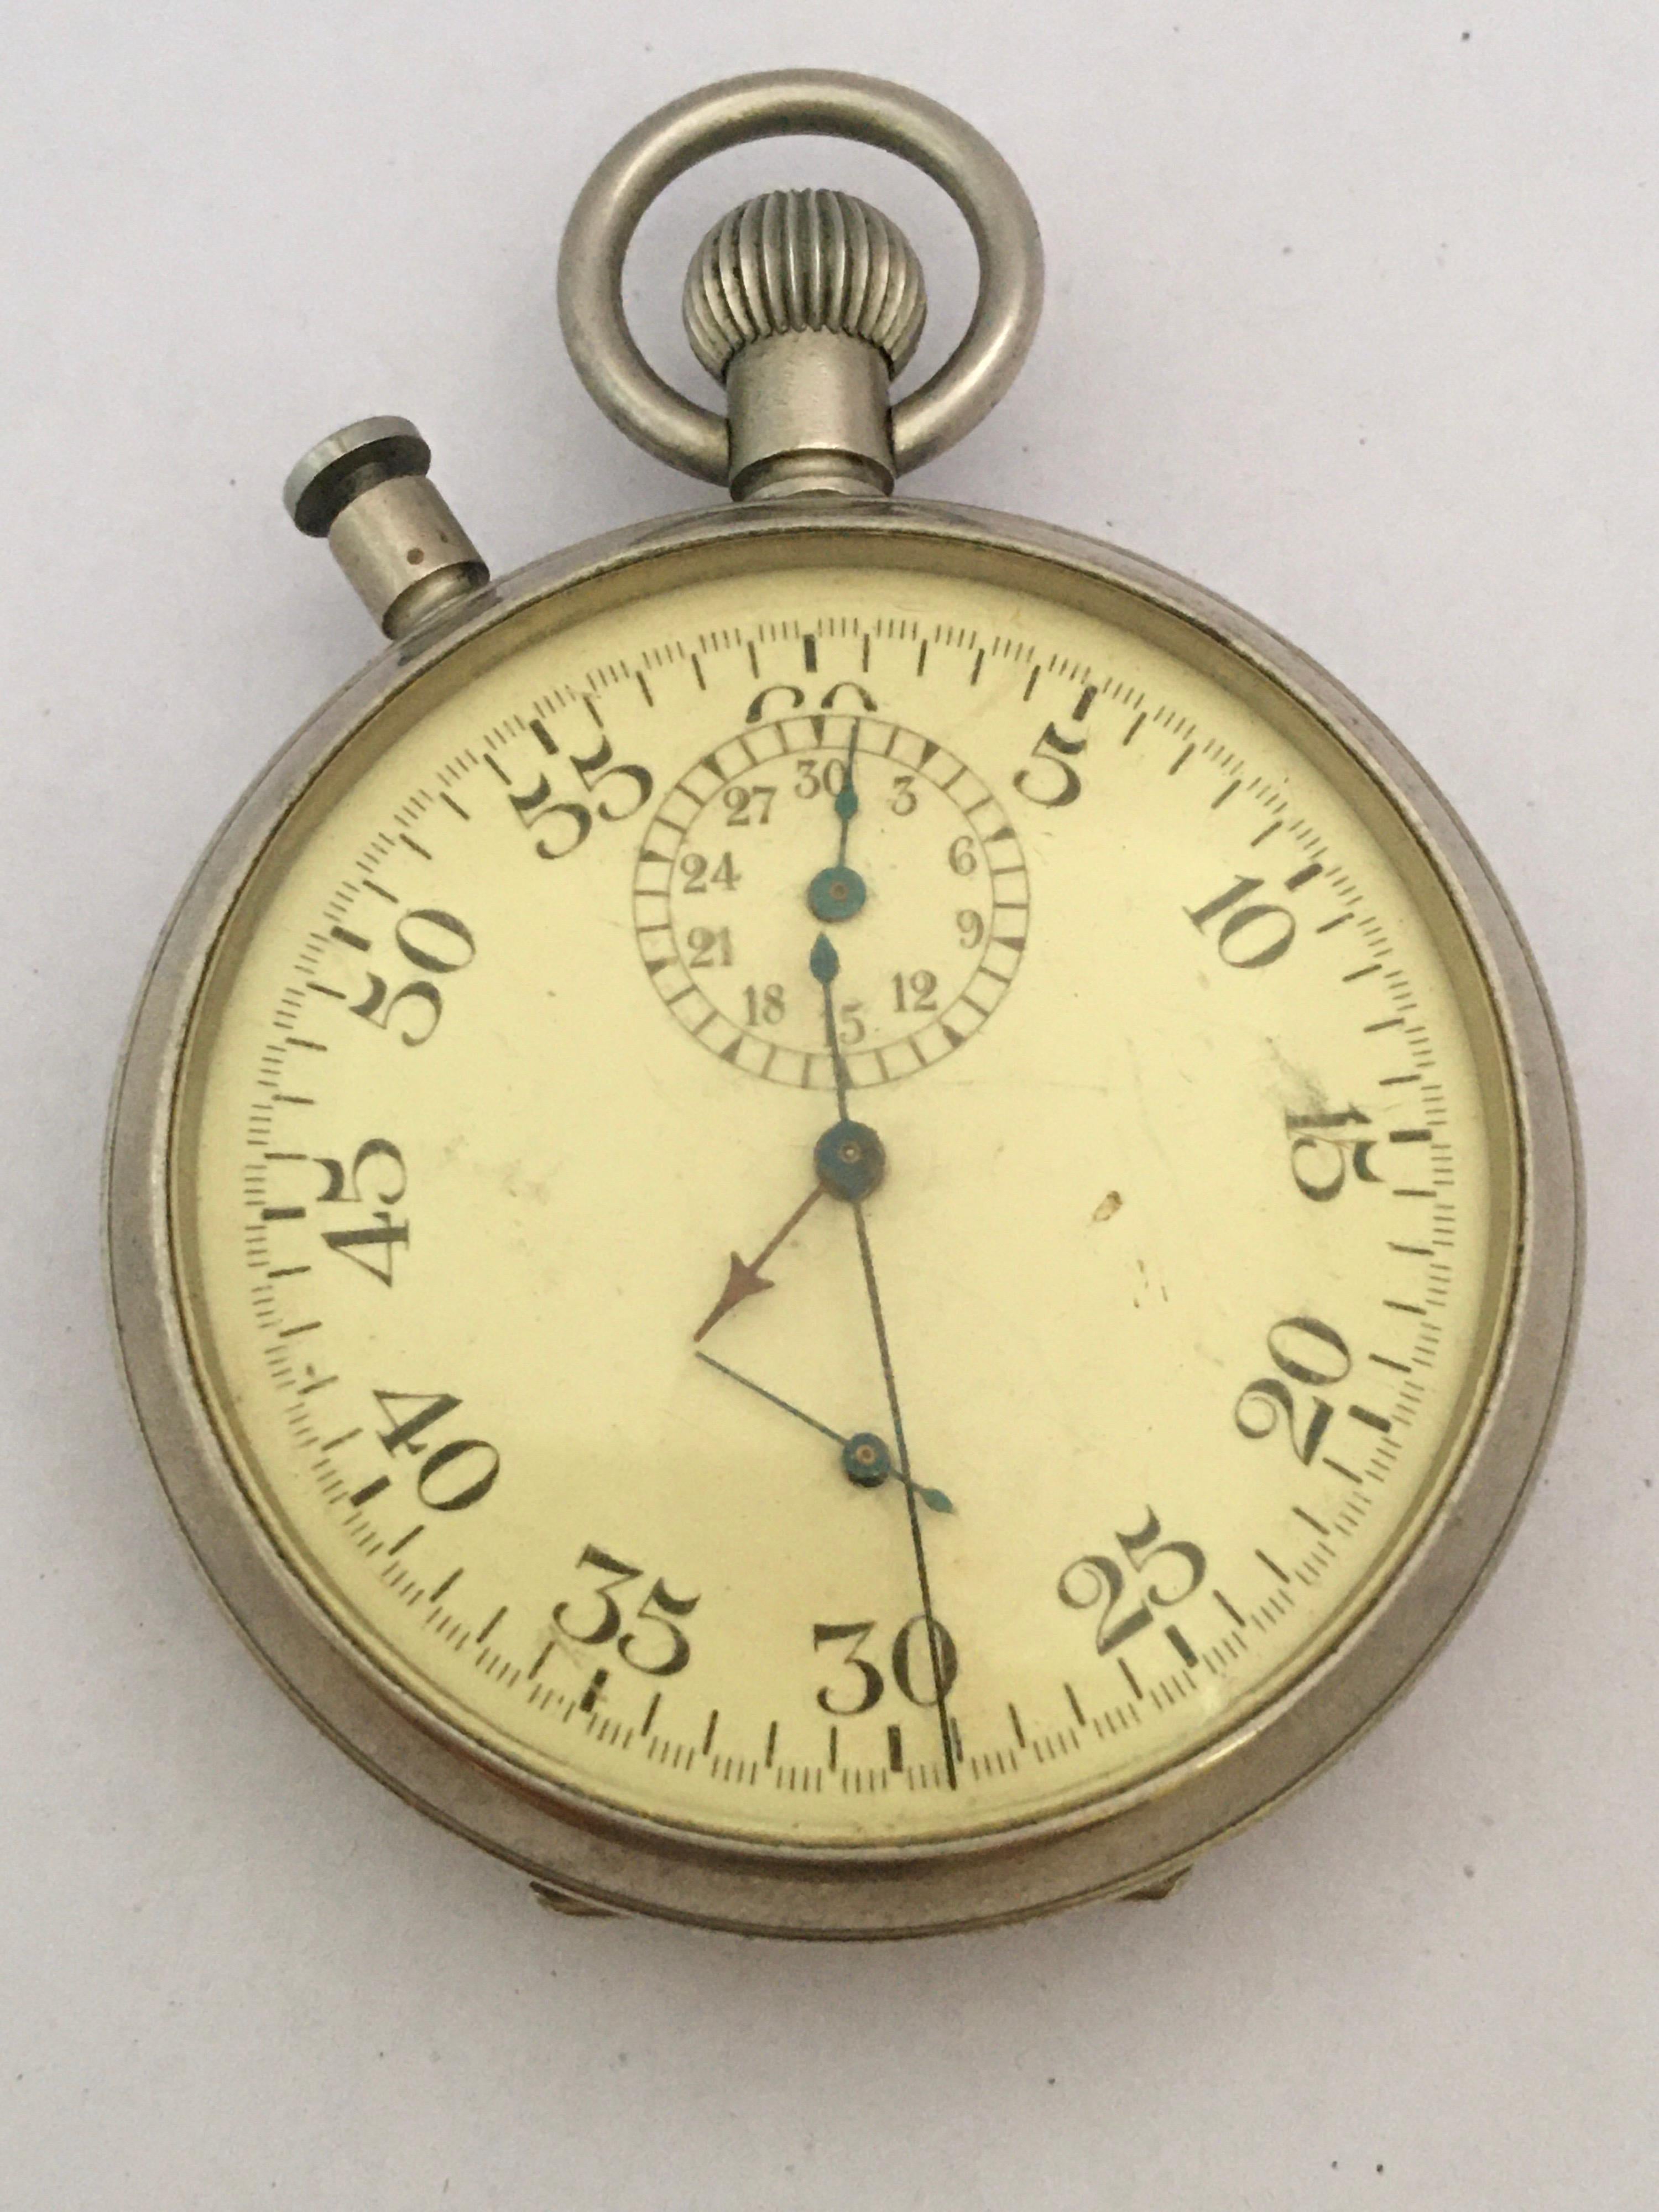 Rare chronomètre chronographe militaire des années 1940 avec rattrapante PATT. 4 No. 11643 9